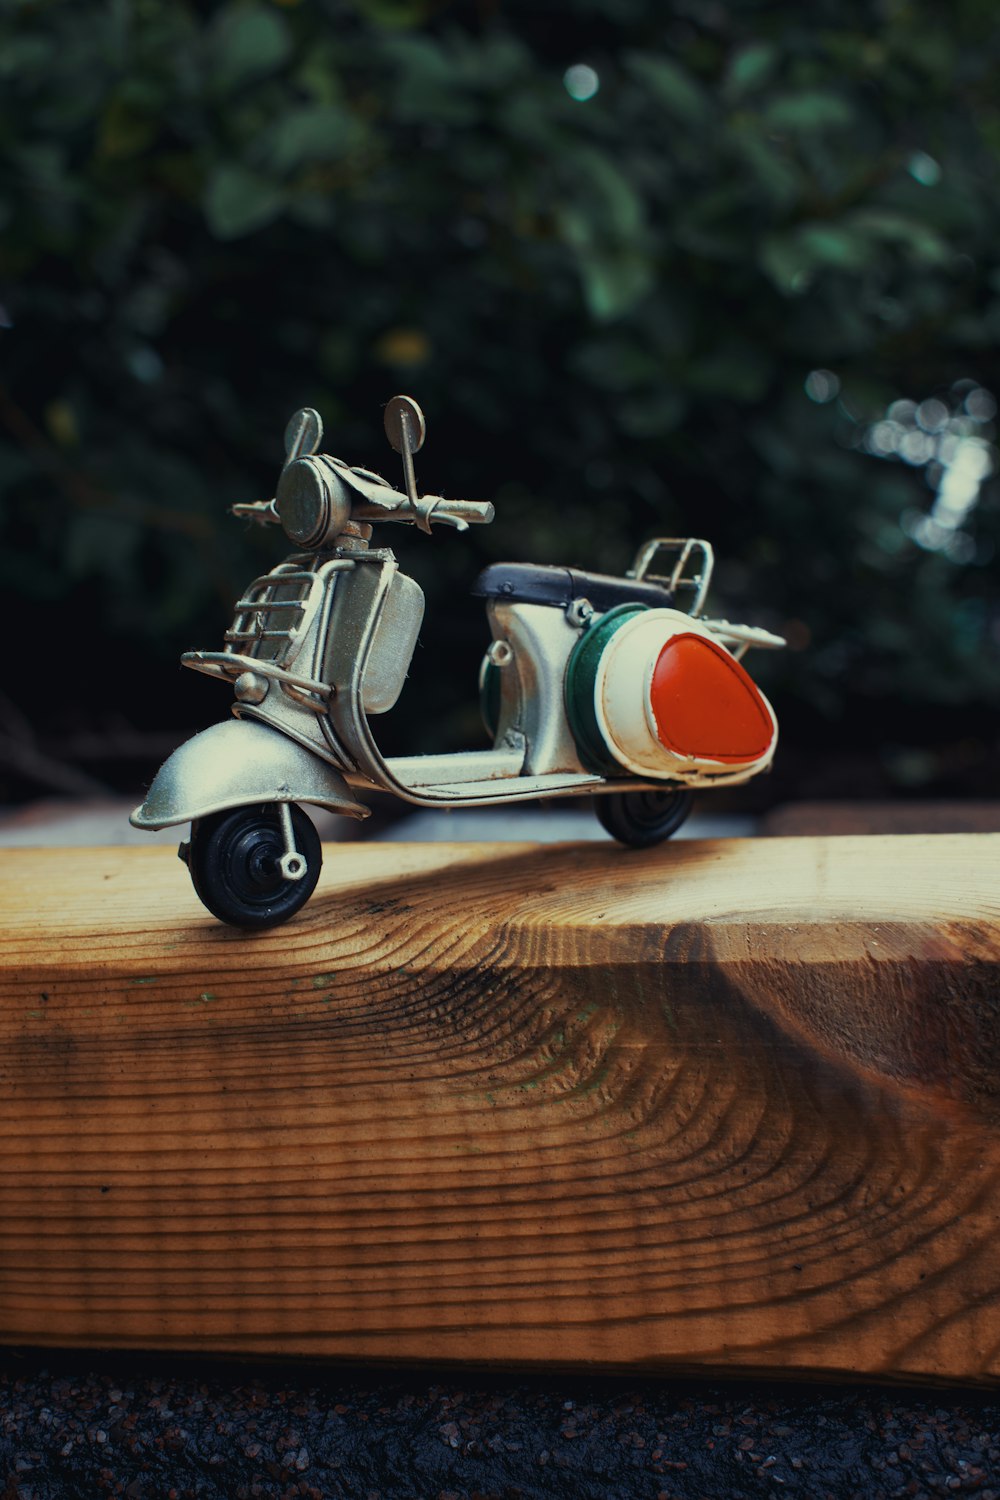 Ein Spielzeugmotorroller, der auf einem Holzbrett sitzt